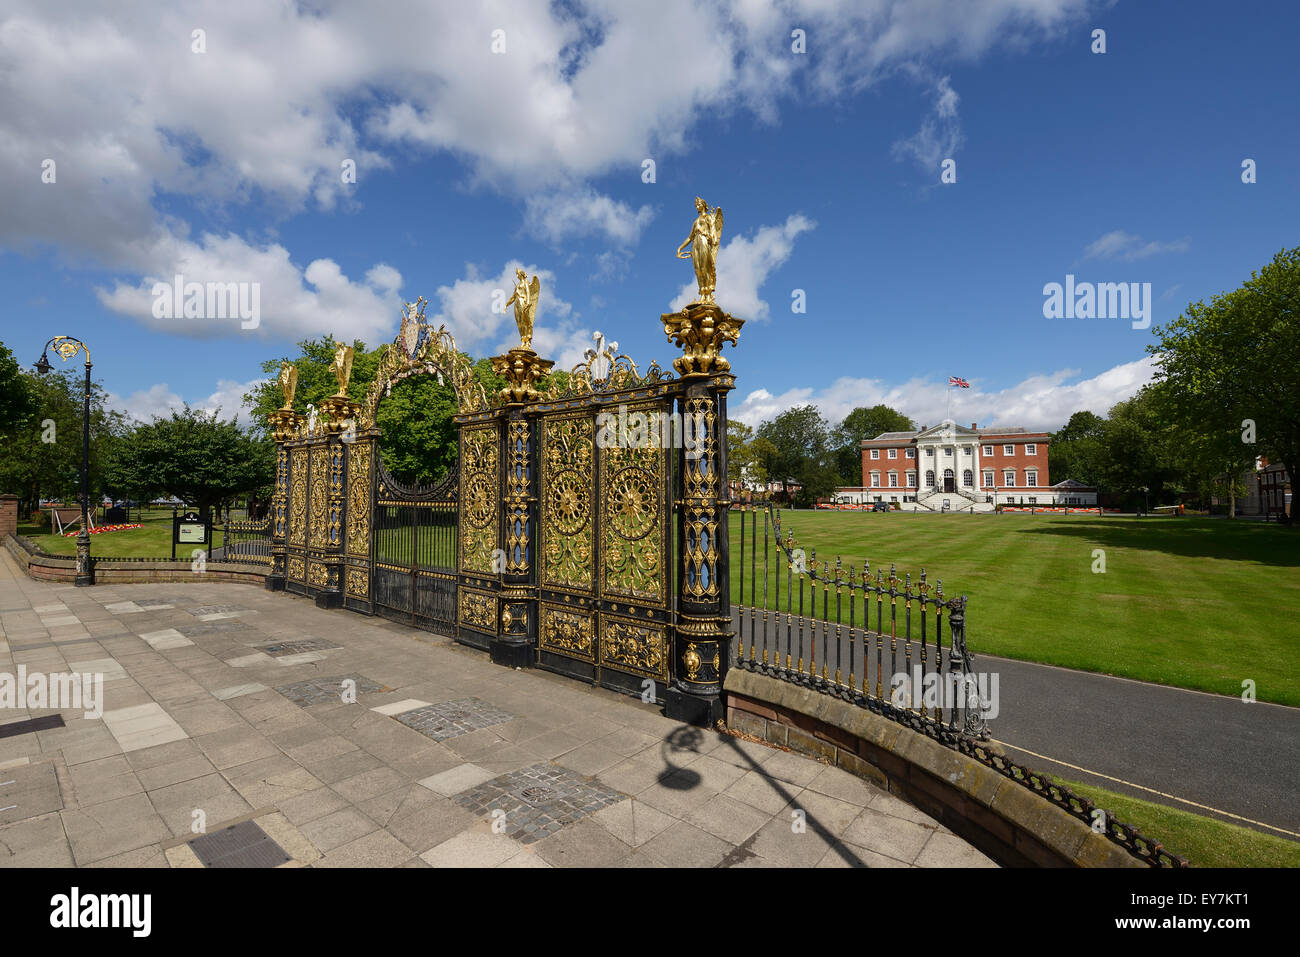 La porte d'or à l'extérieur de ville Warrington Cheshire UK Banque D'Images